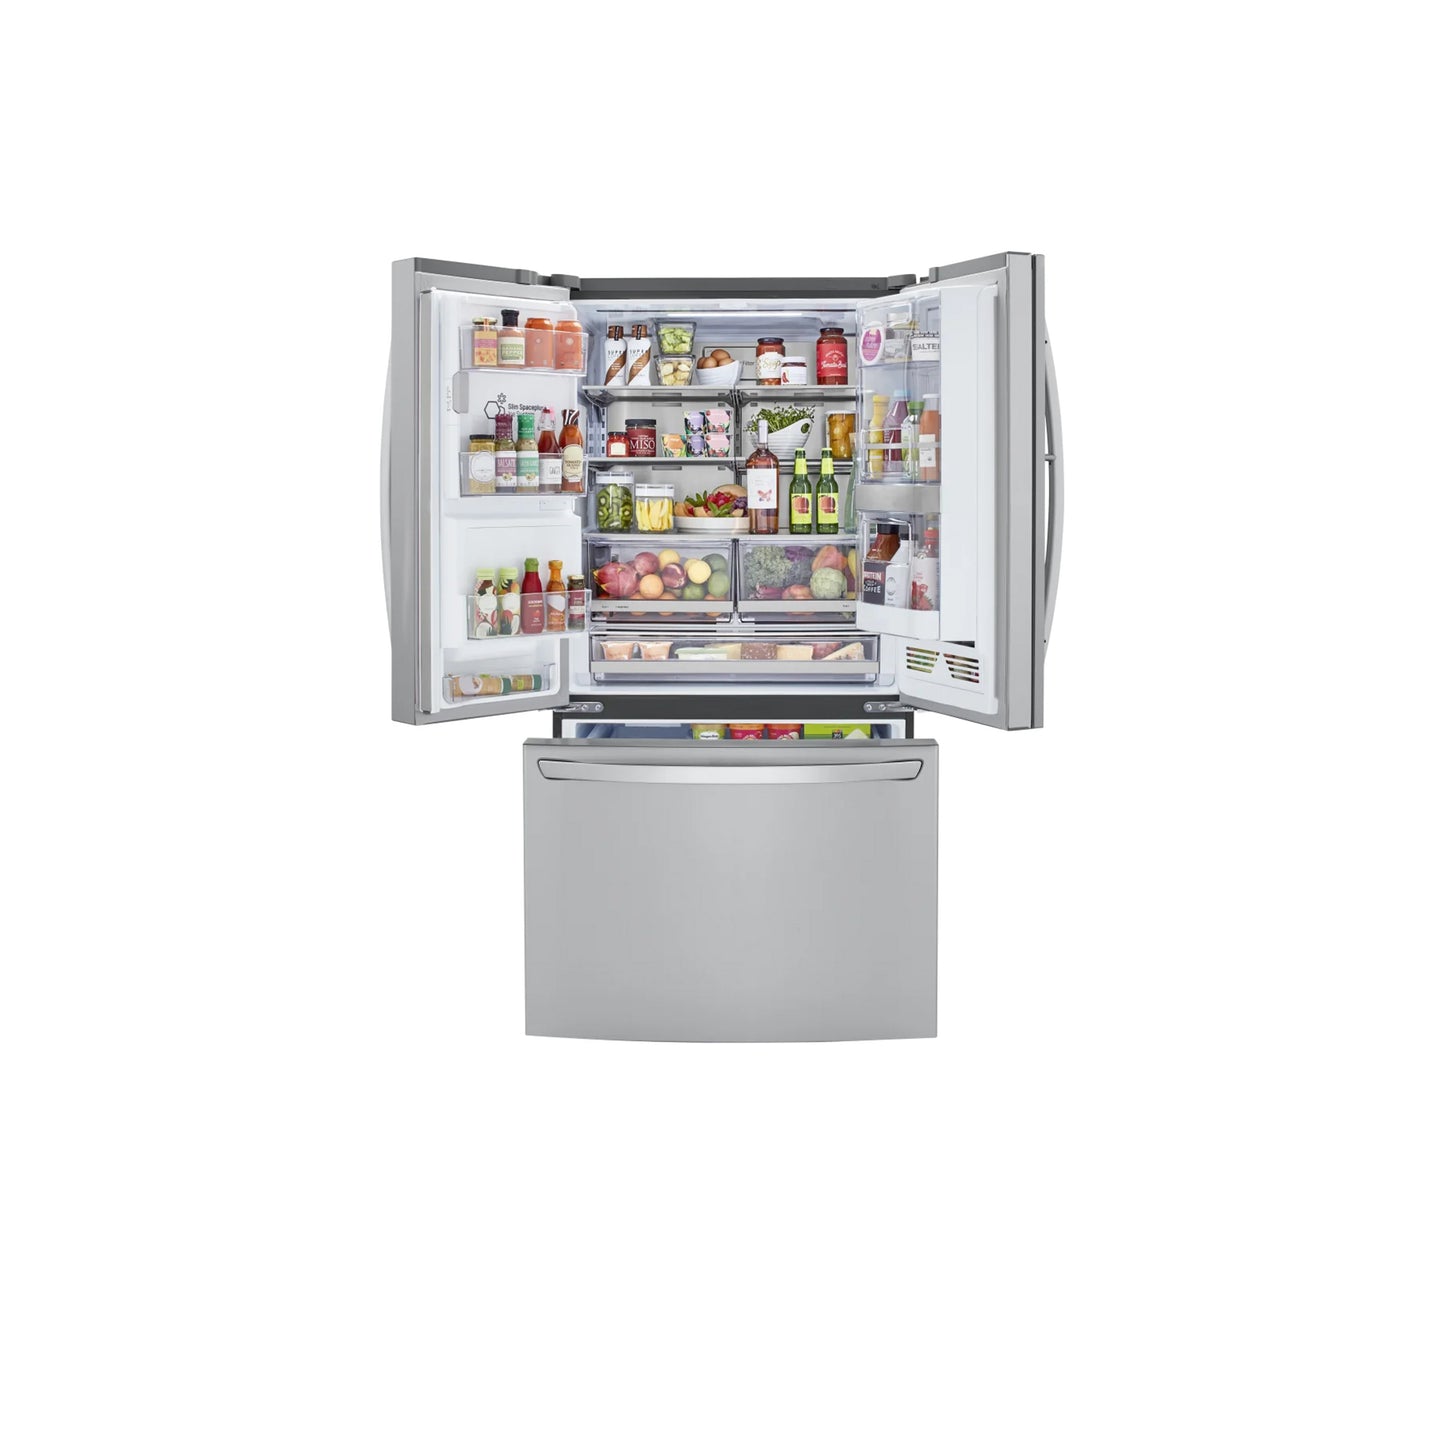 36-inch Wide French Door Refrigerator - 30 cu. ft. - LRFDS3016S